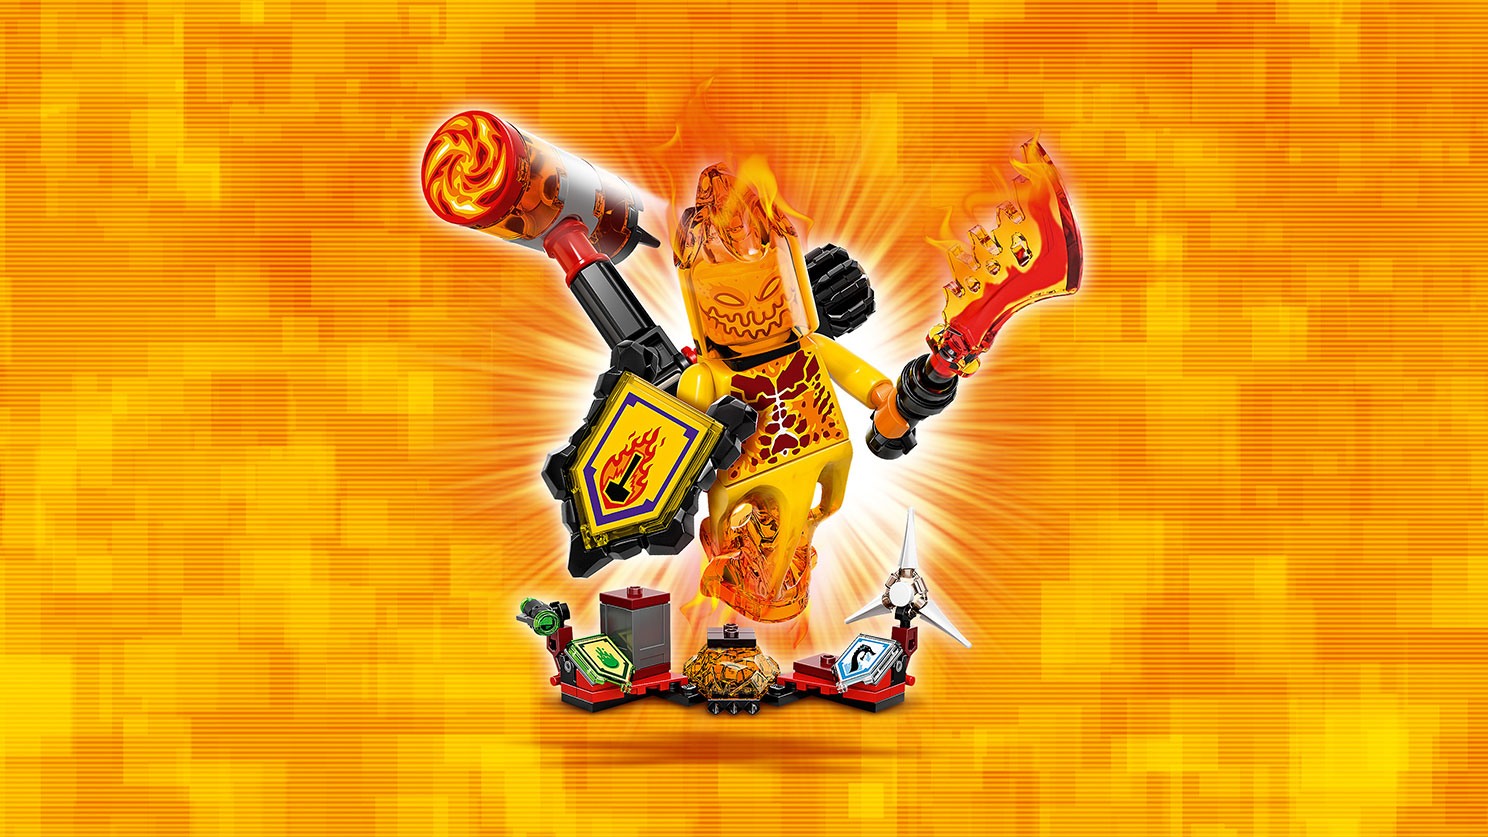 Lego Nexo Knights. Флама — Абсолютная сила  